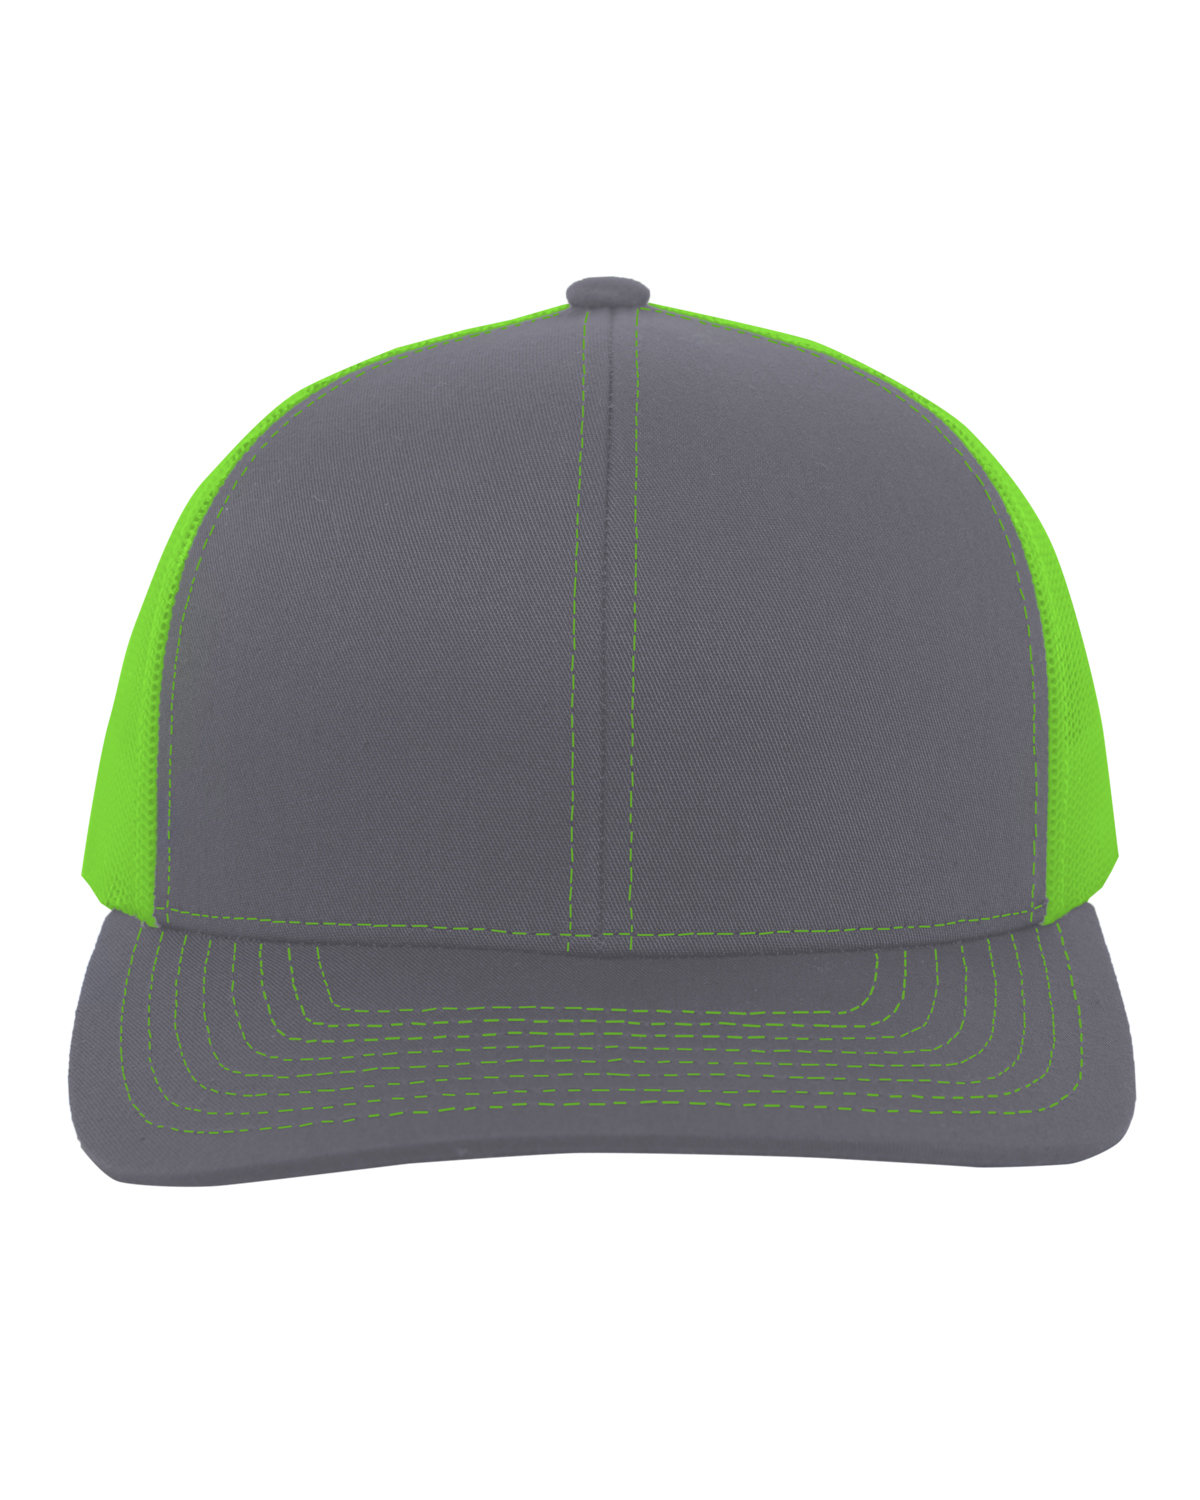 Pacific Headwear Trucker Snapback Hat GRAPHITE/ N GRN 